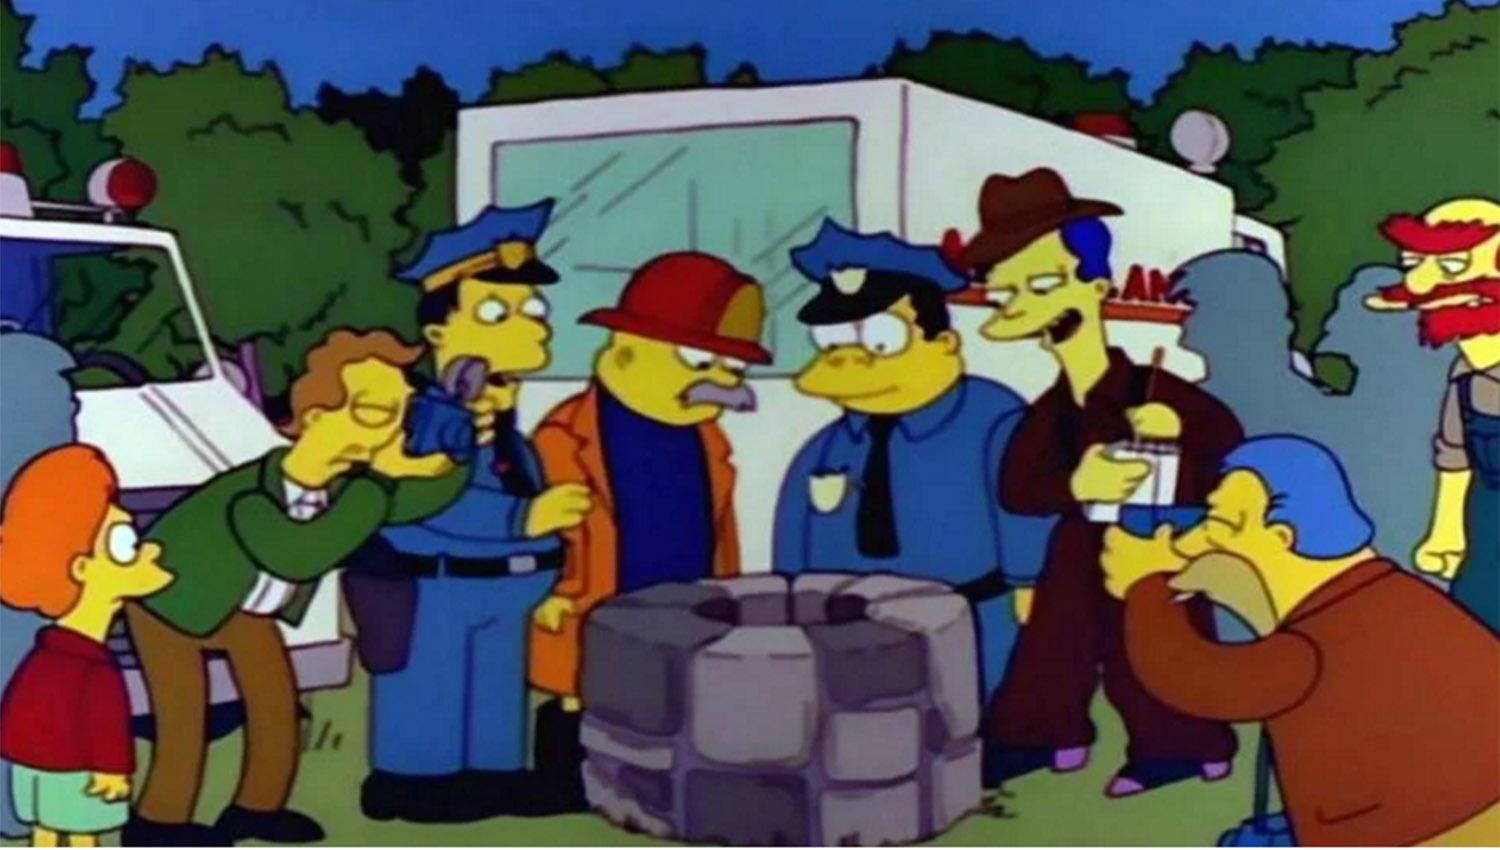 En las redes, recordaron el episodio de Los Simpson en los que la comunidad se preocupa por un niño que se cayó a un pozo llamado Timmy O' Toole, aunque luego se supo que todo había sido una broma. 